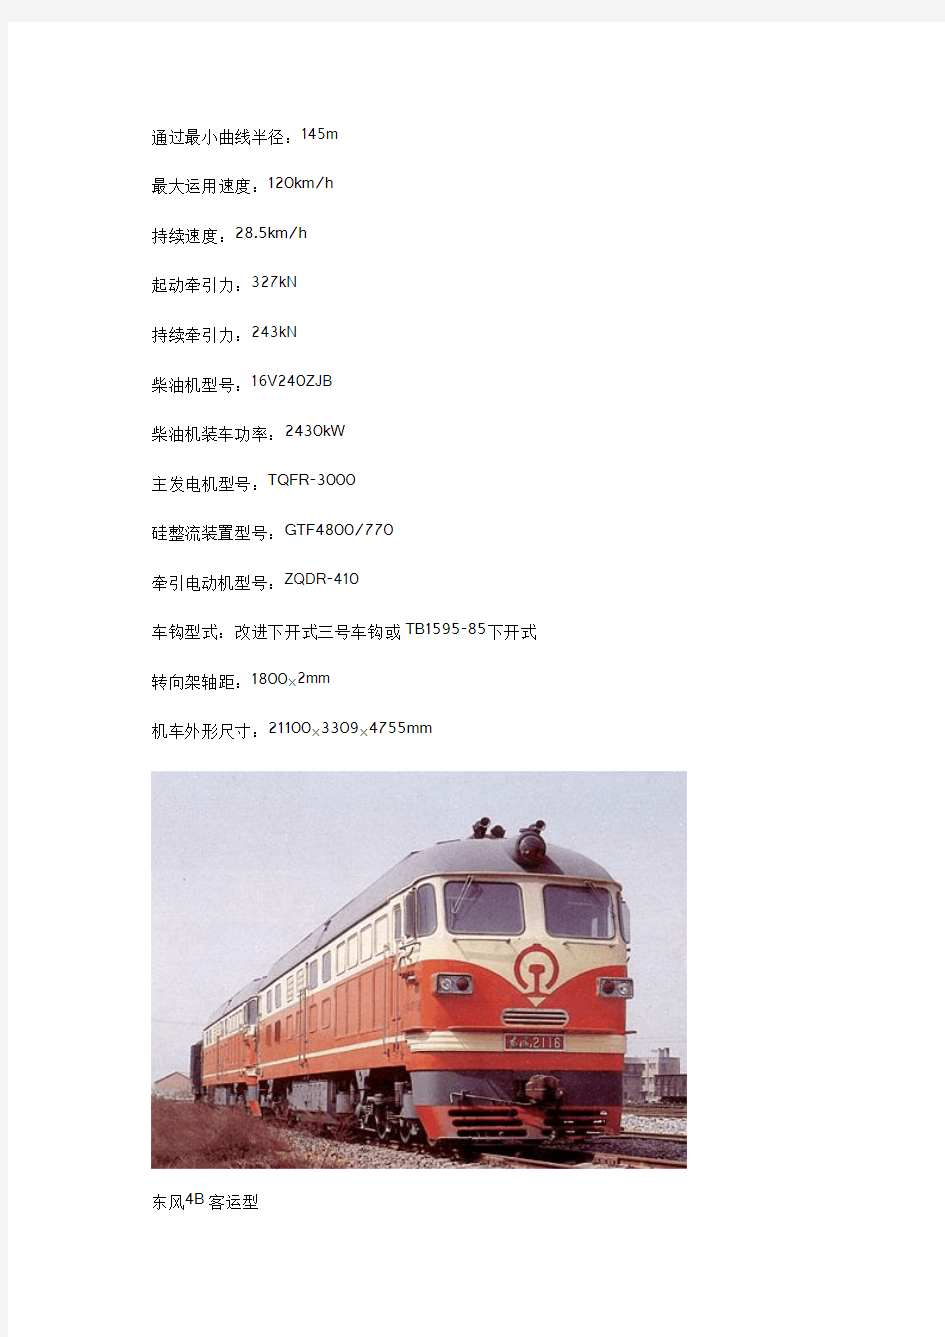 中国现役火车头介绍